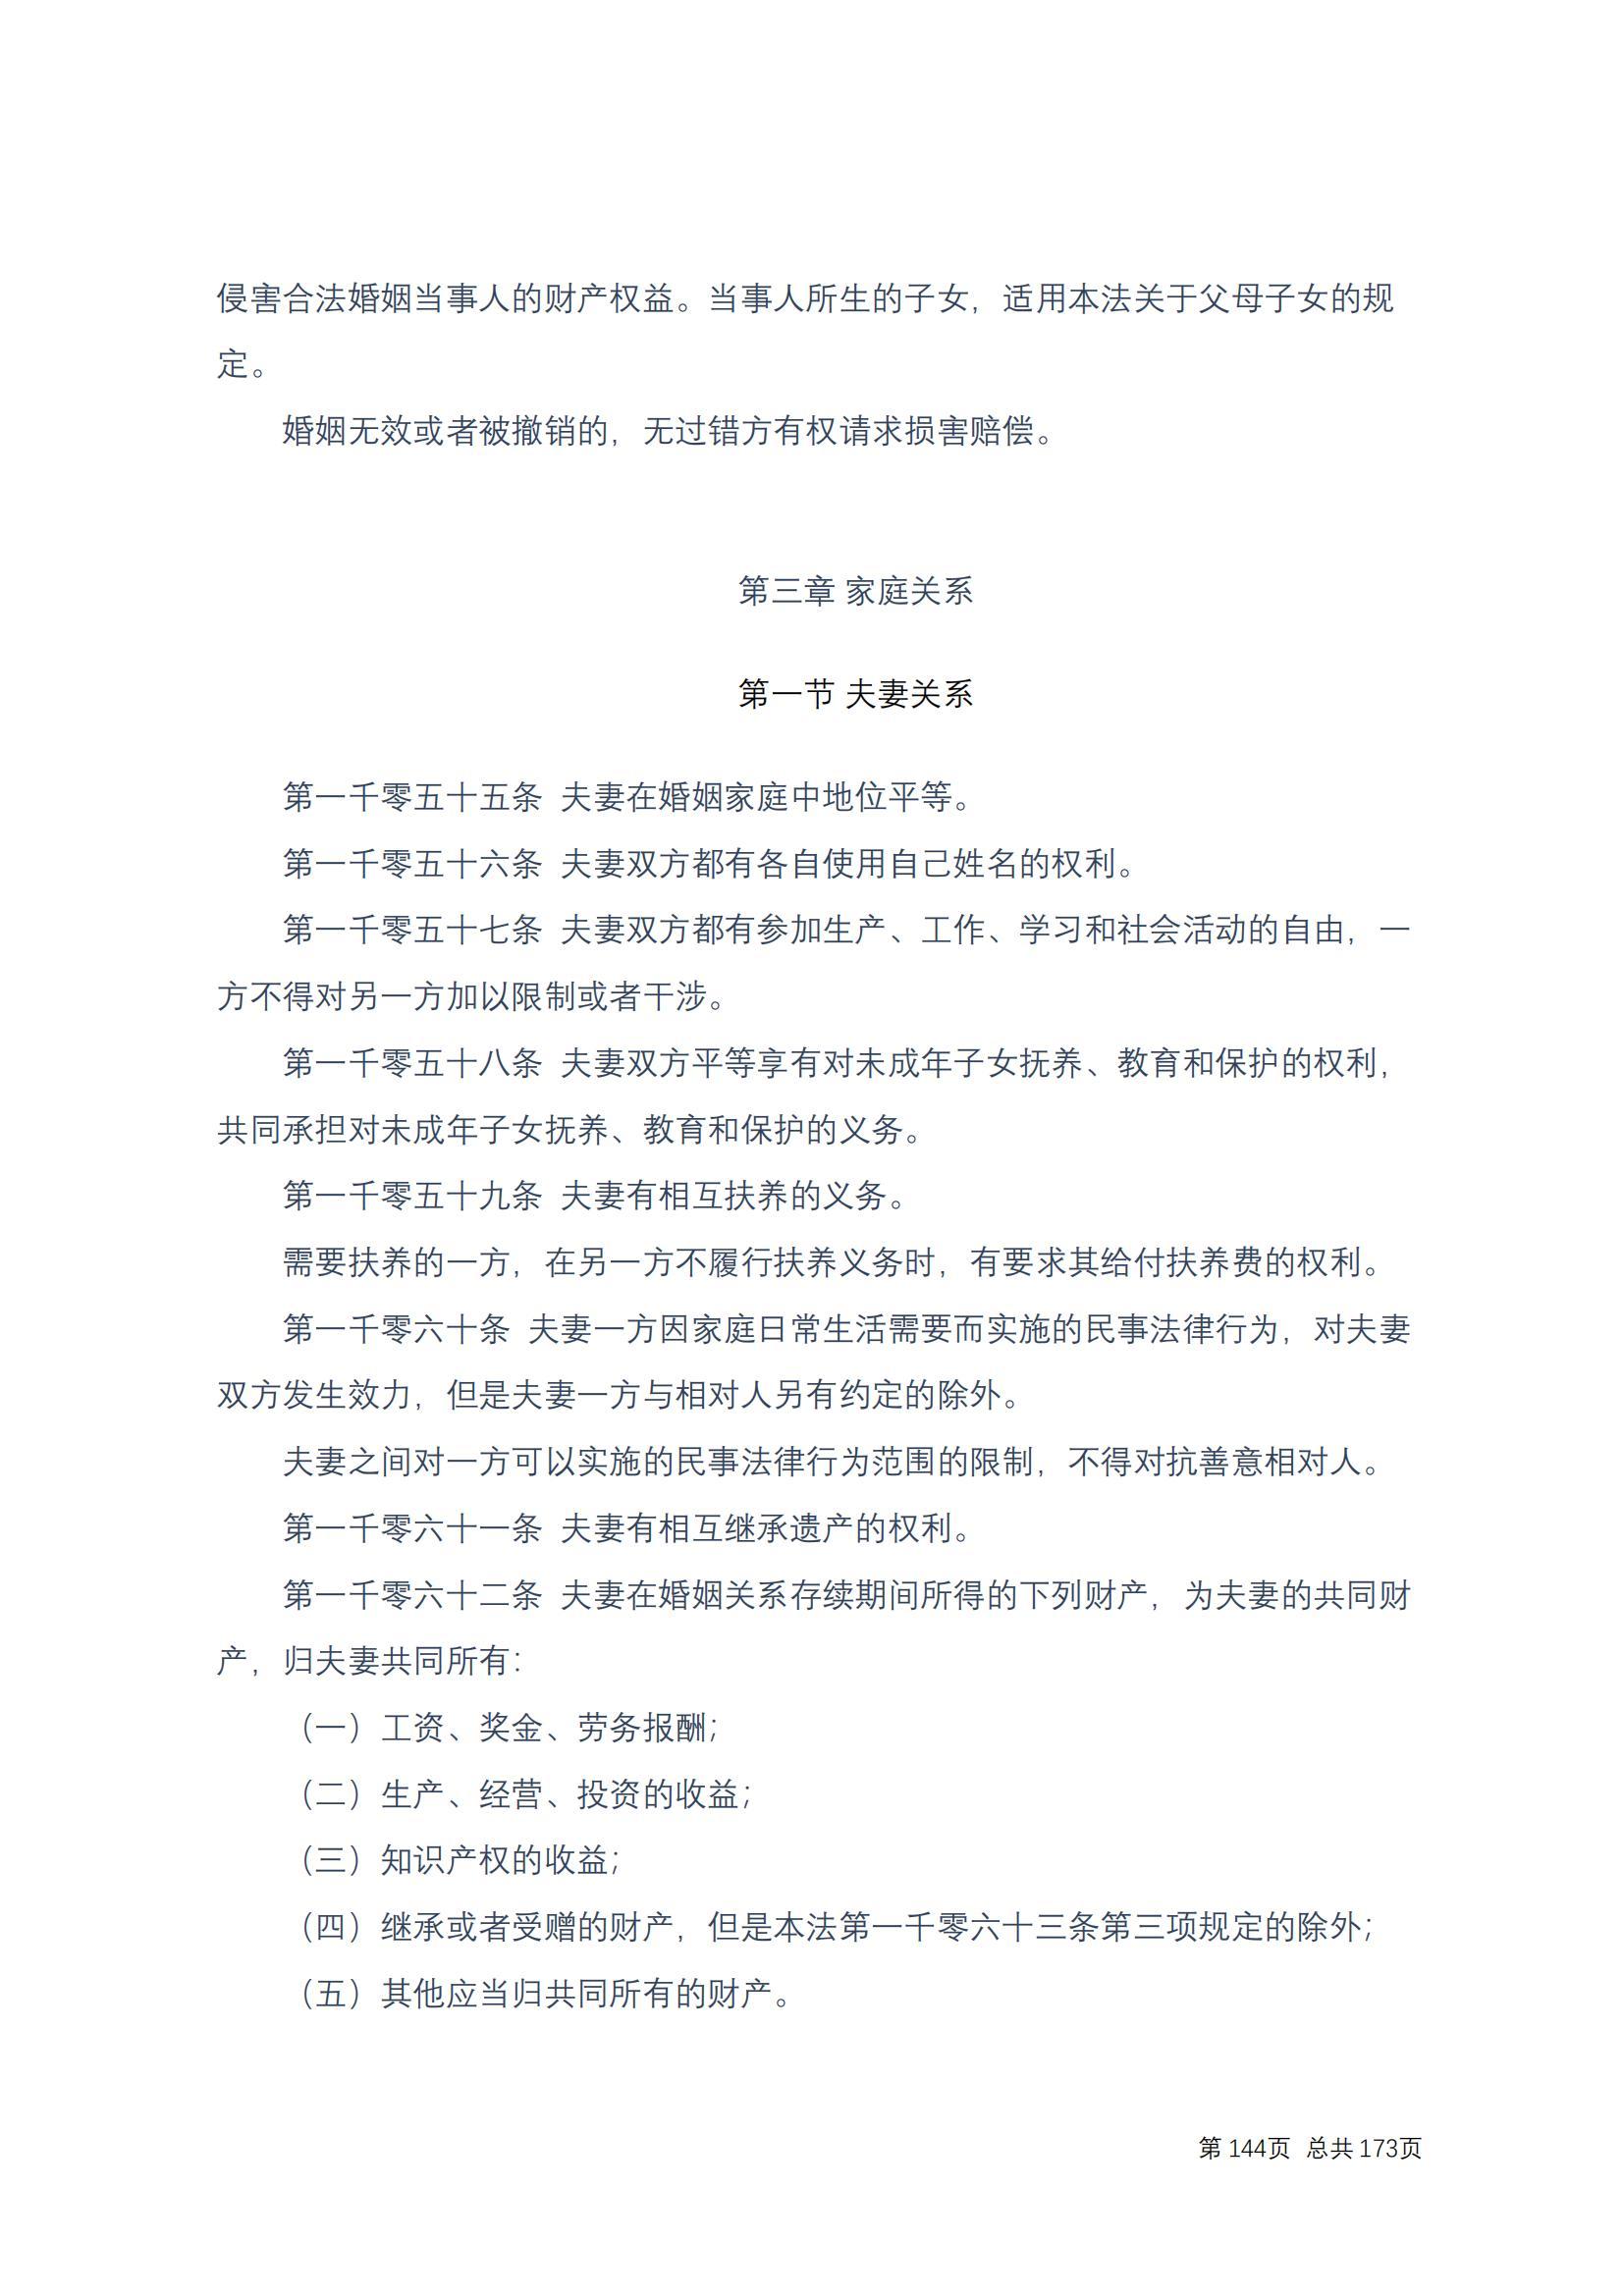 中华人民共和国民法典 修改过_143